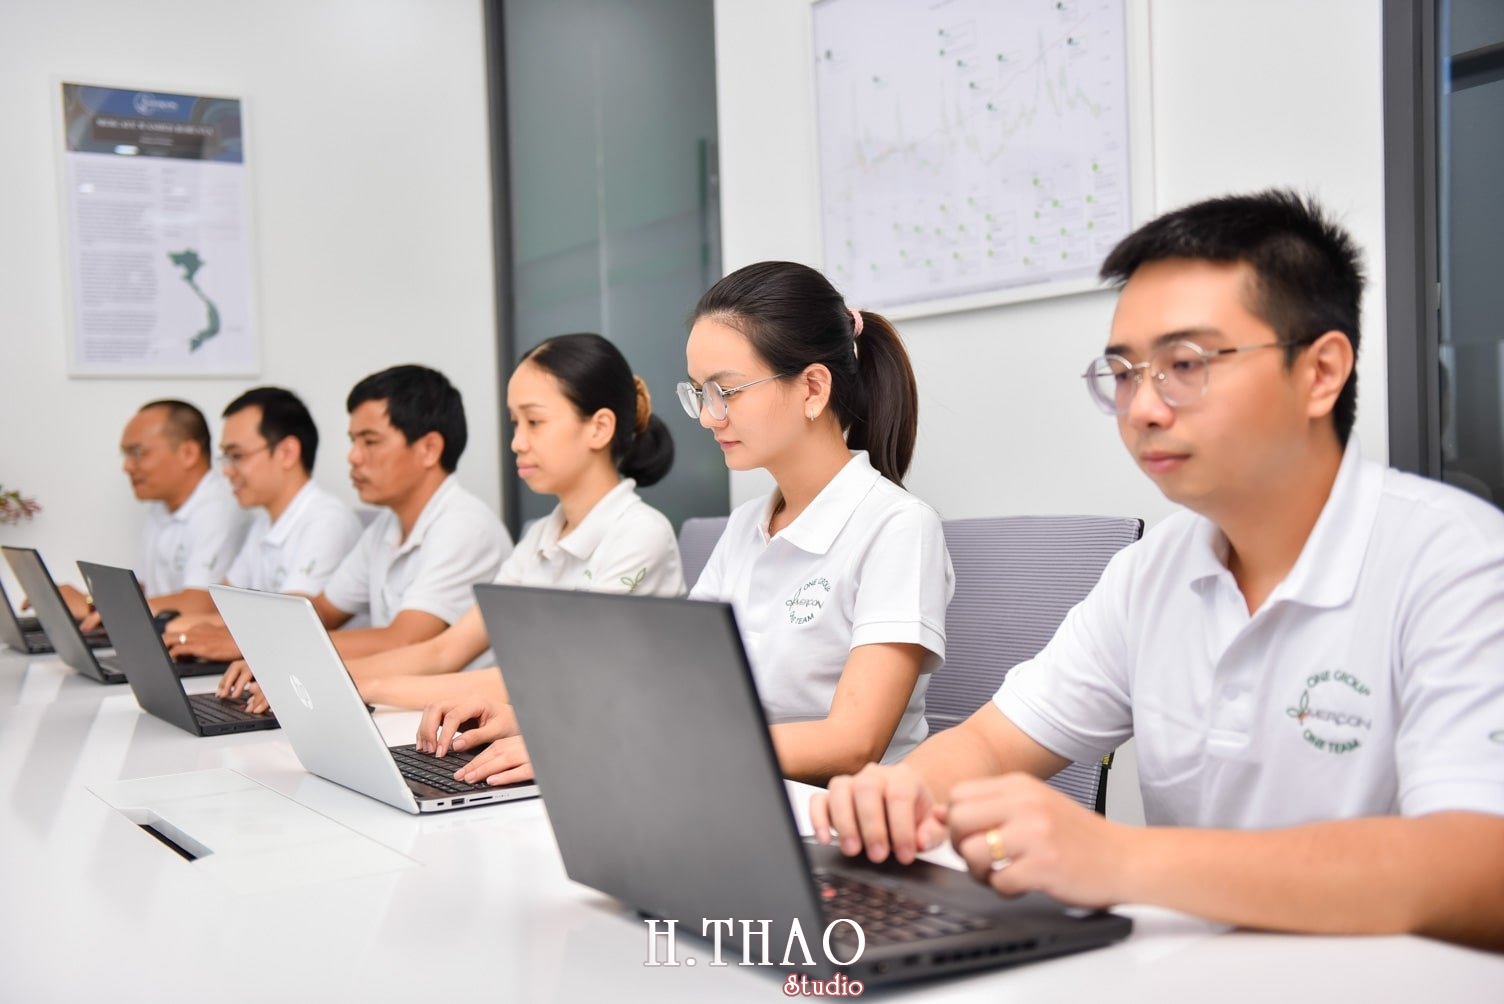 anh cong ty 7 min - #3 concept chụp ảnh công ty chuyên nghiệp nhất hiện nay – HThao Studio